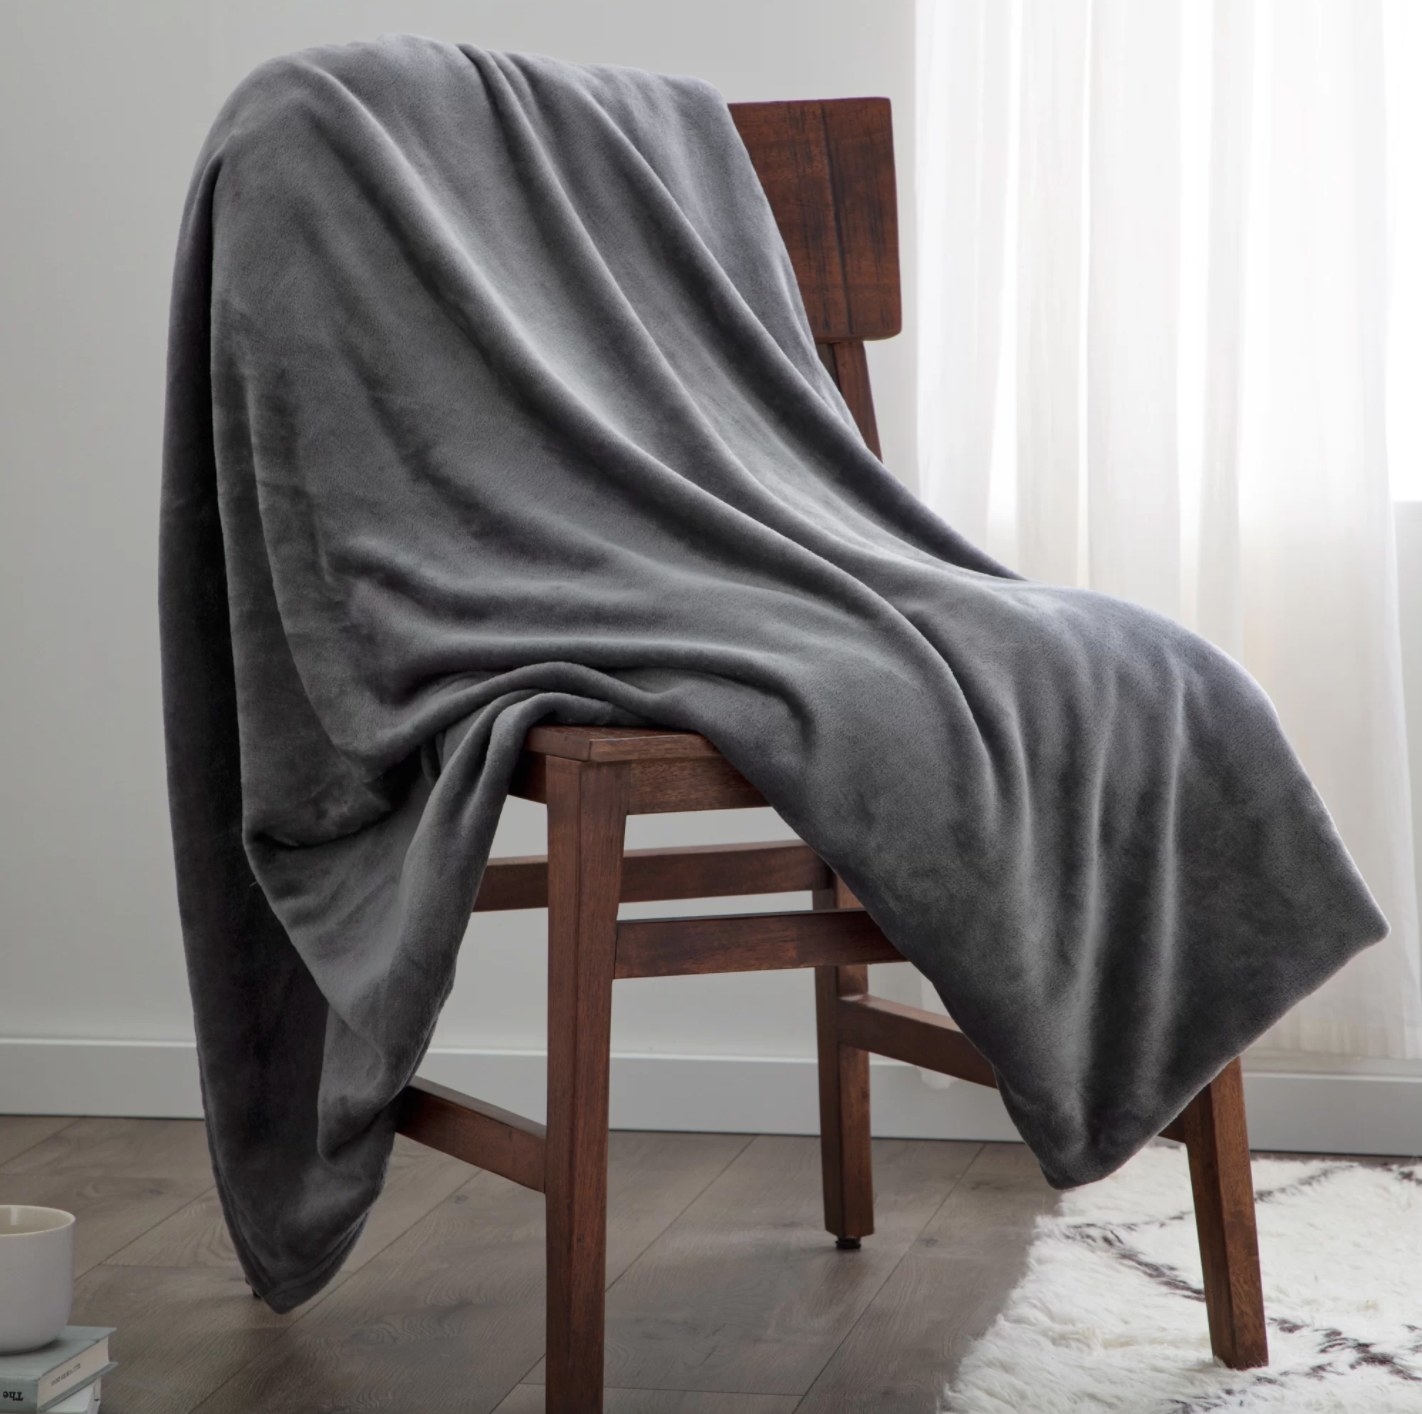 The fleece blanket in gray